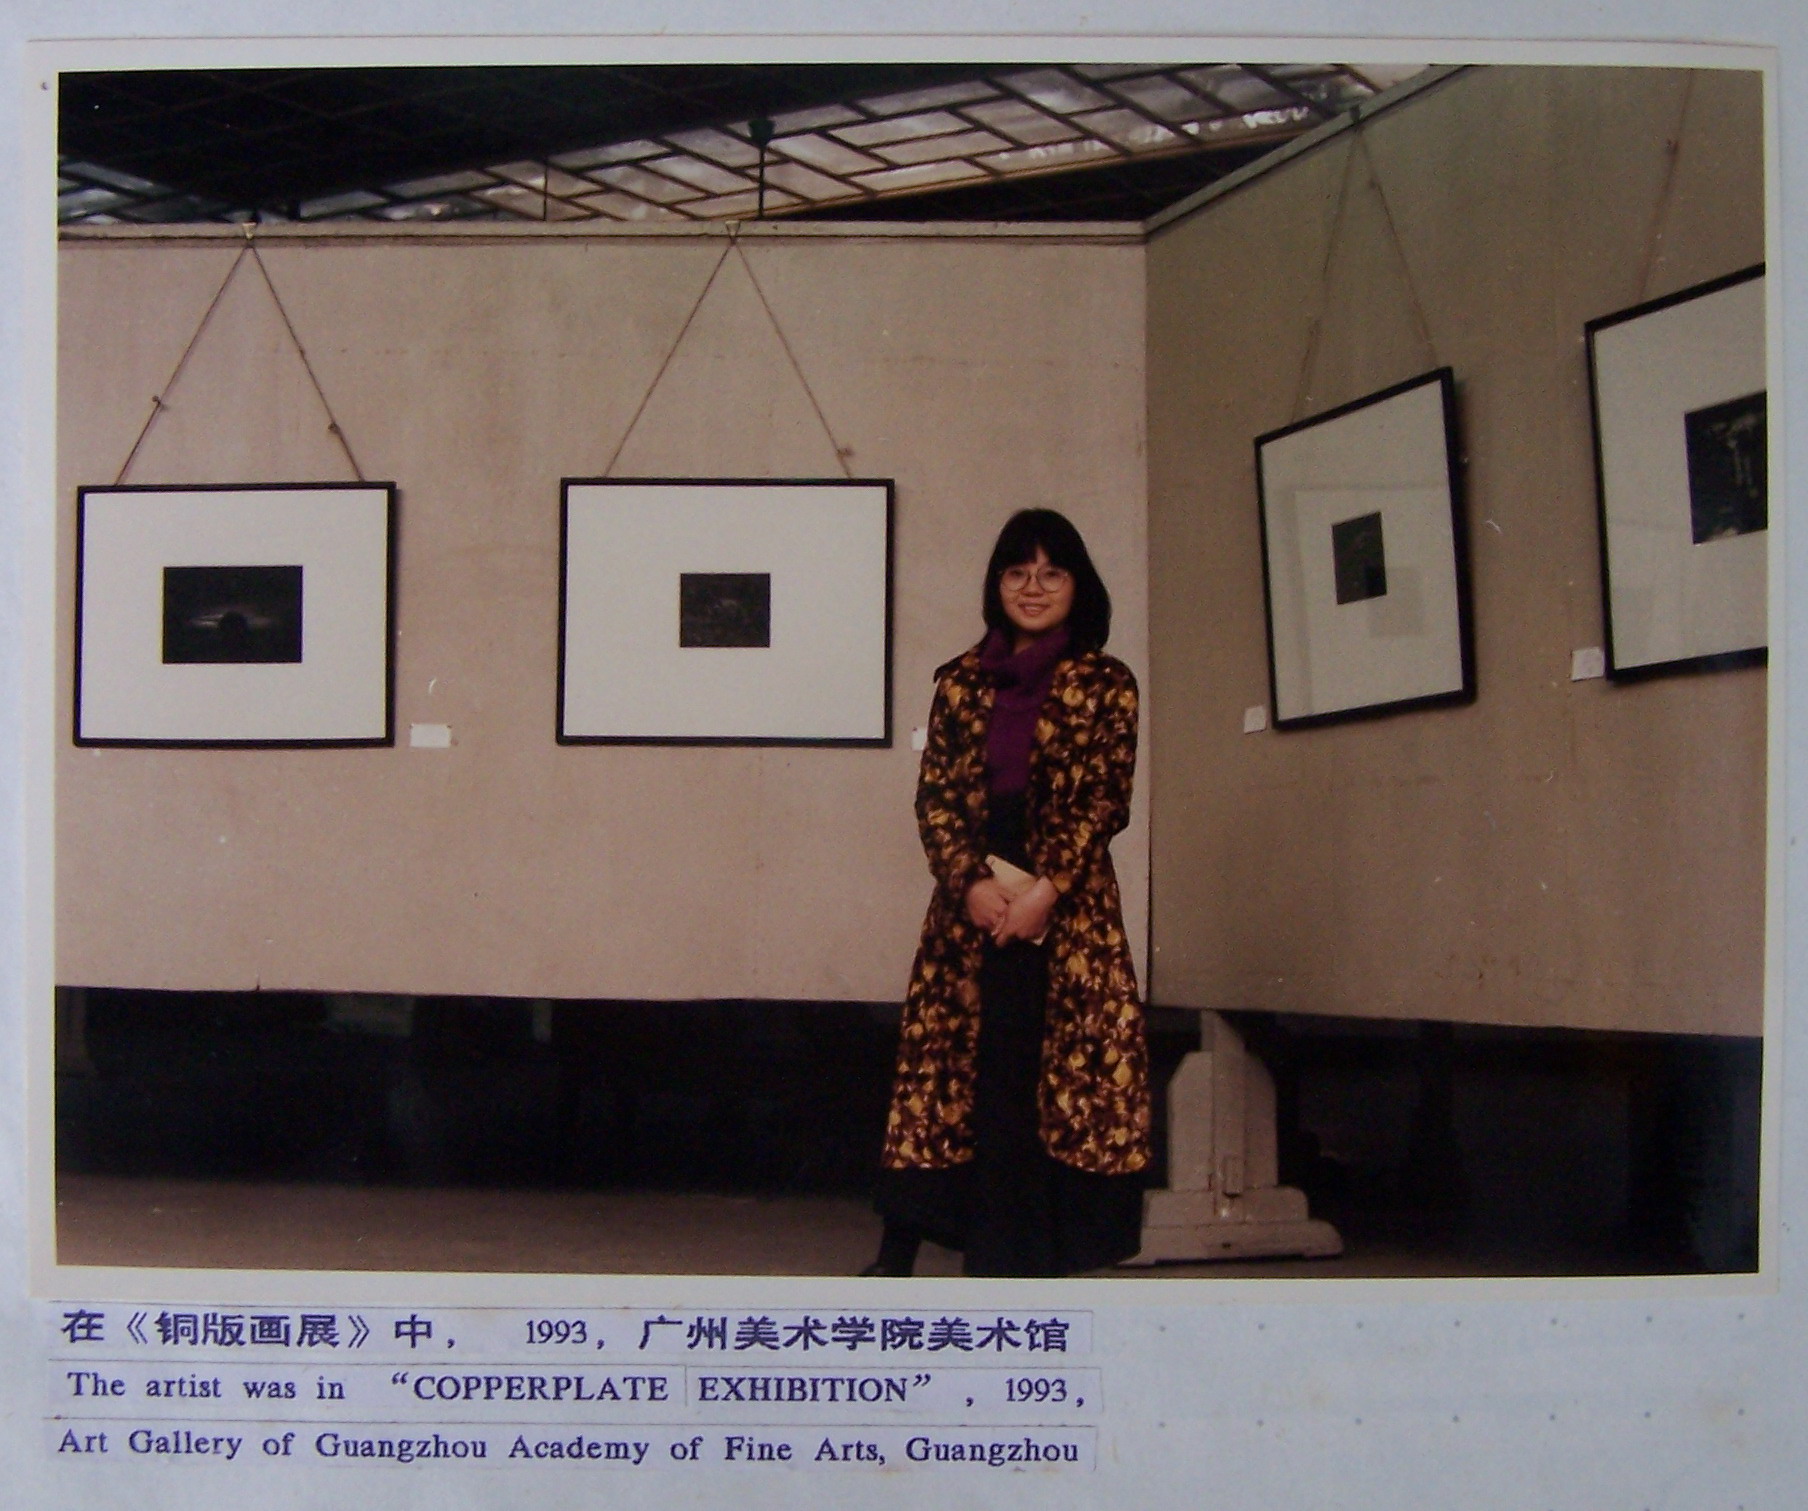 黃少垠參加《銅版畫展》，廣州美術學院美術館（1992）